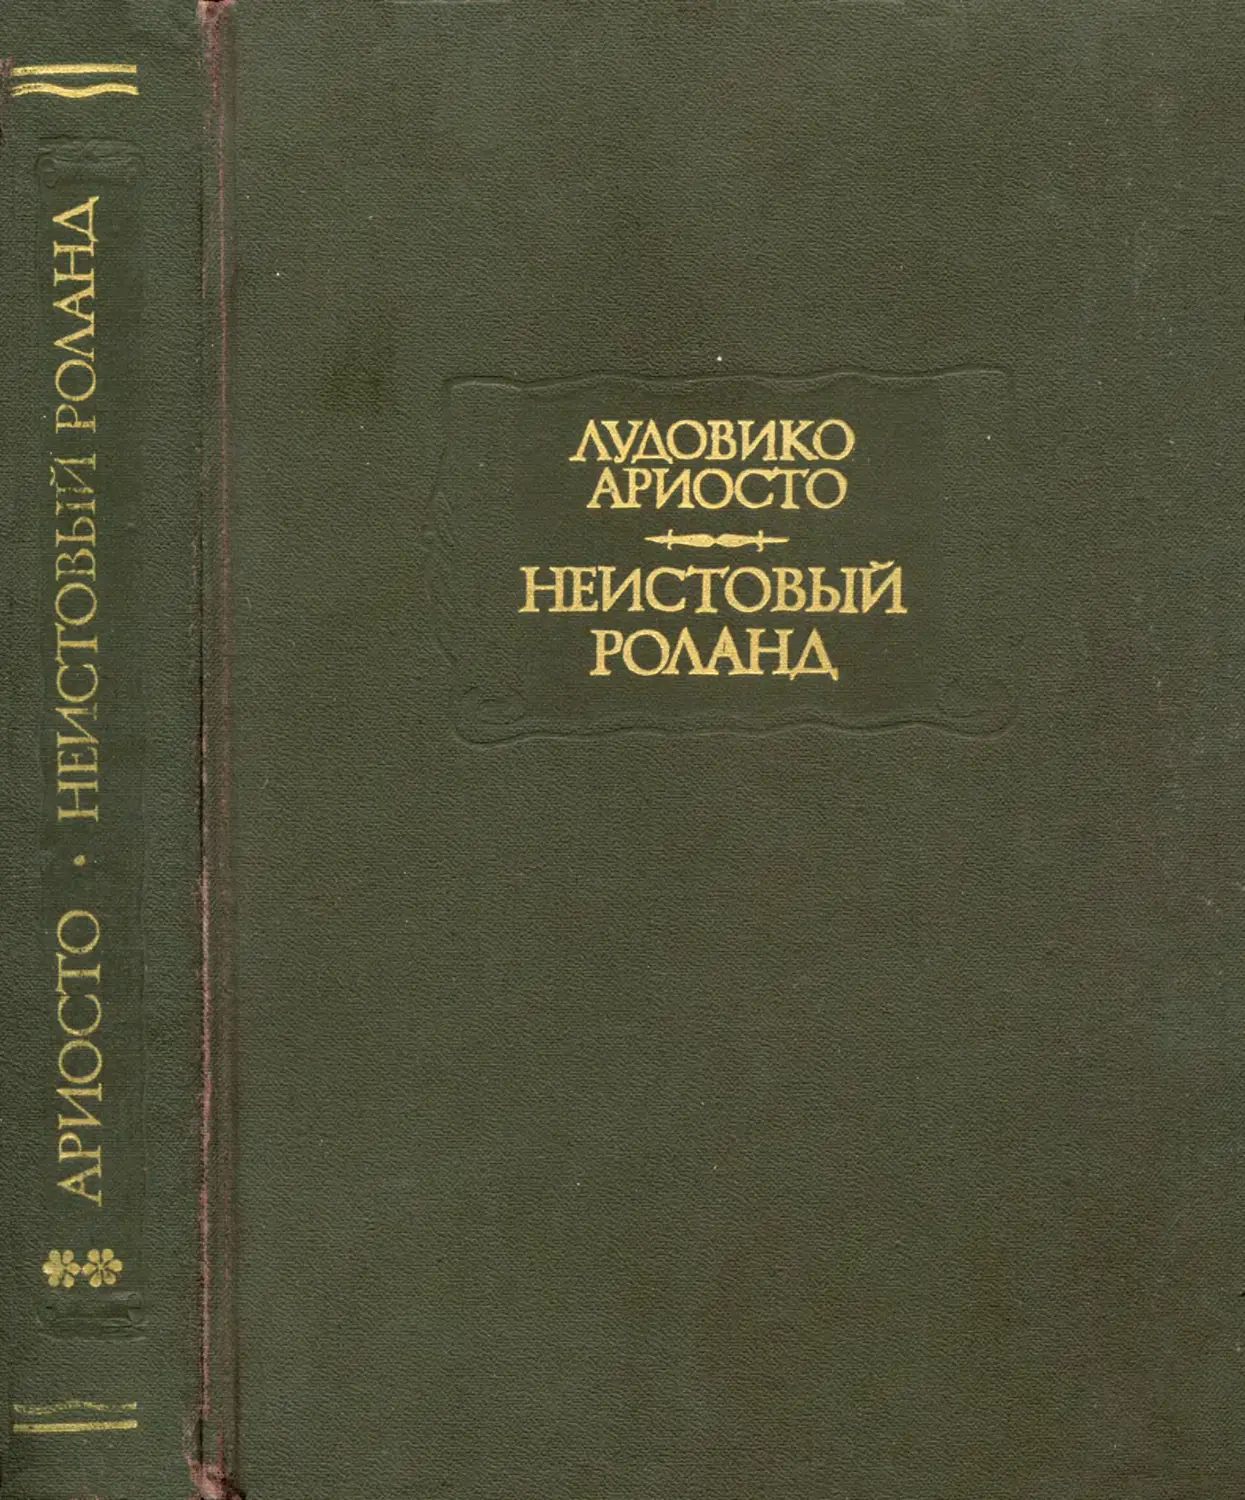 Ариосто Л. Неистовый Роланд. Песни XXVI-XLVI - 1993